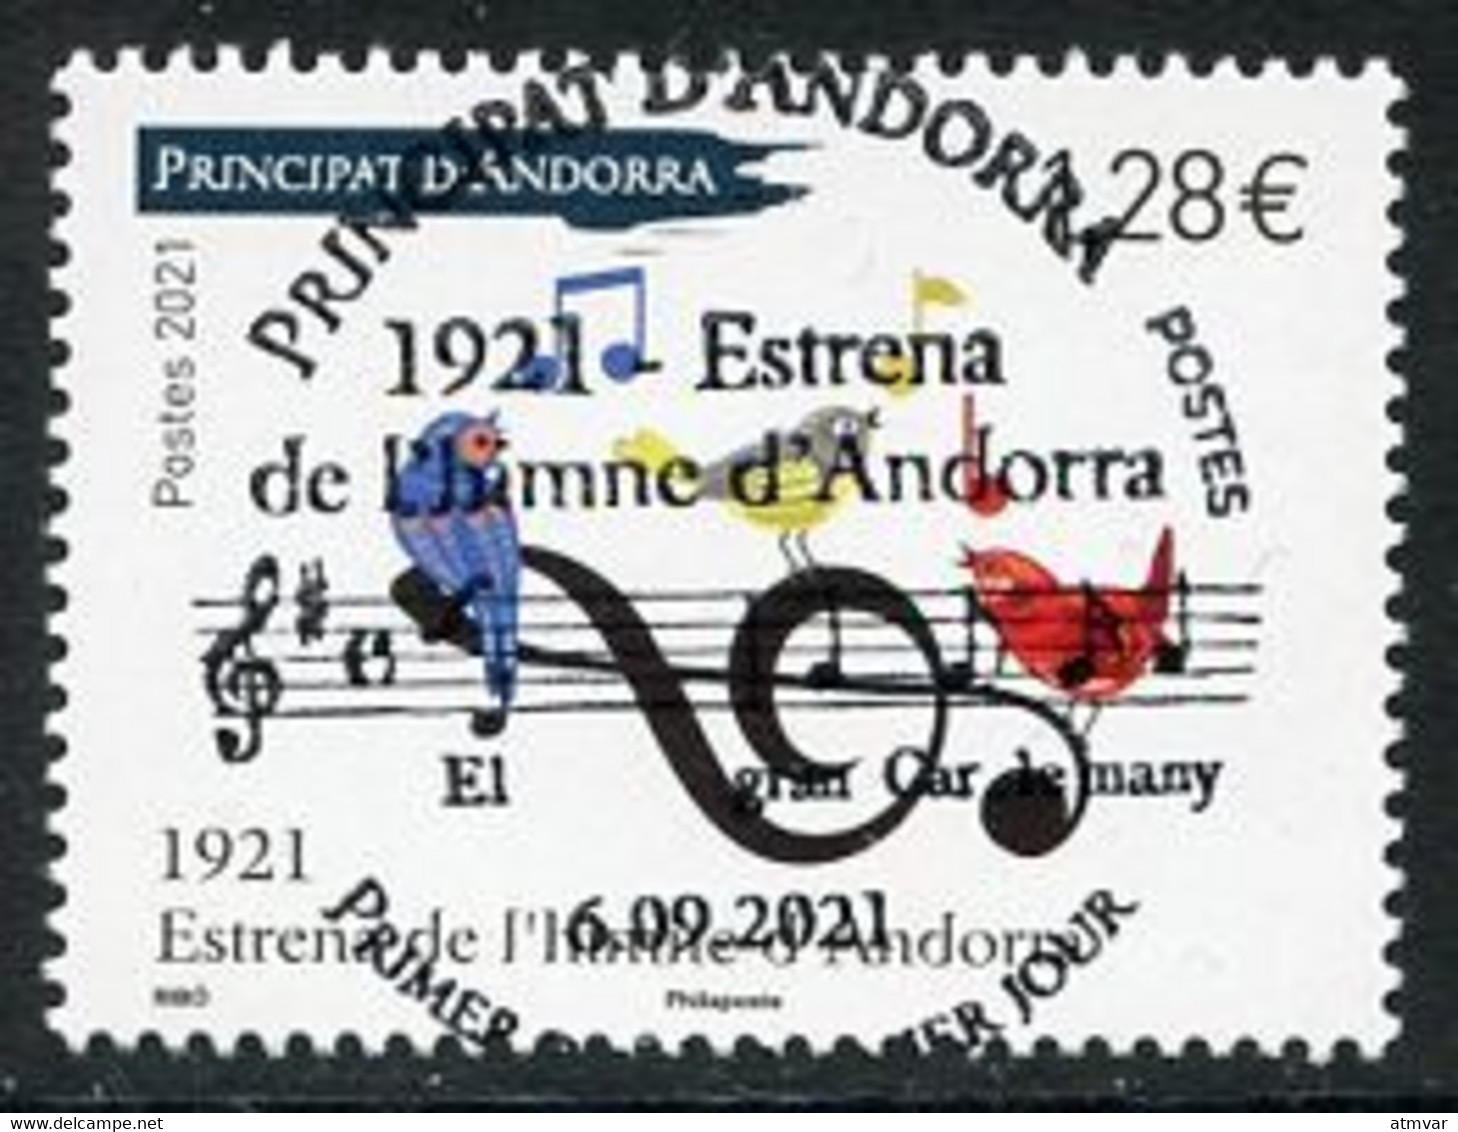 ANDORRA (2021) 1921 Estrena De L'himne D'Andorra, Himno, Music, Anthem, Hymne, Musique, Oiseau, Birds, Notes - First Day - Gebruikt